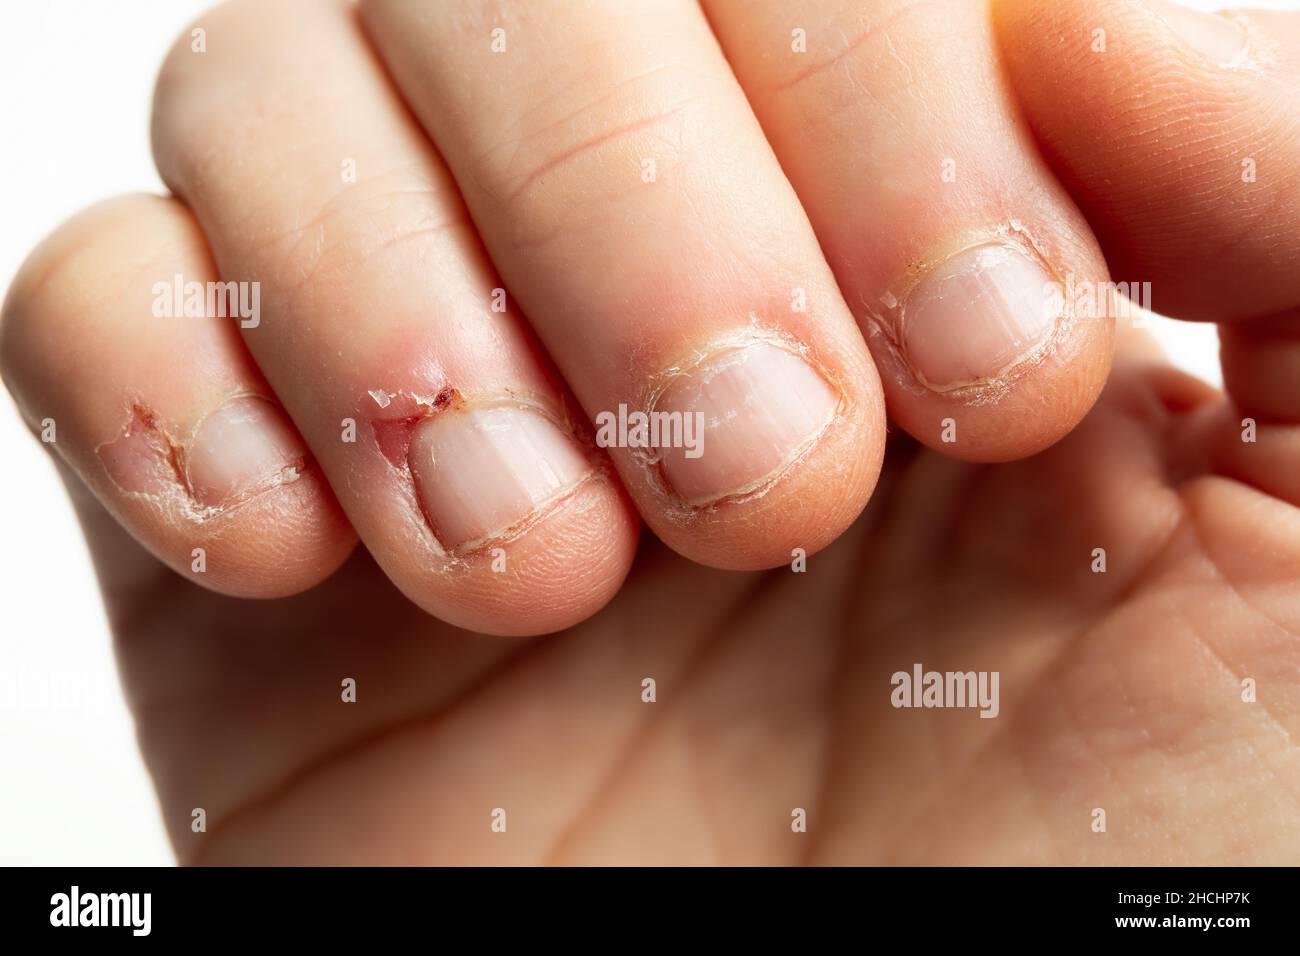 Doigts avec signes de morsure des ongles.Gros plan de la main femelle adulte avec des ongles mâchés et de nombreuses petites blessures sur la peau environnante.Signes de la mentalement Banque D'Images